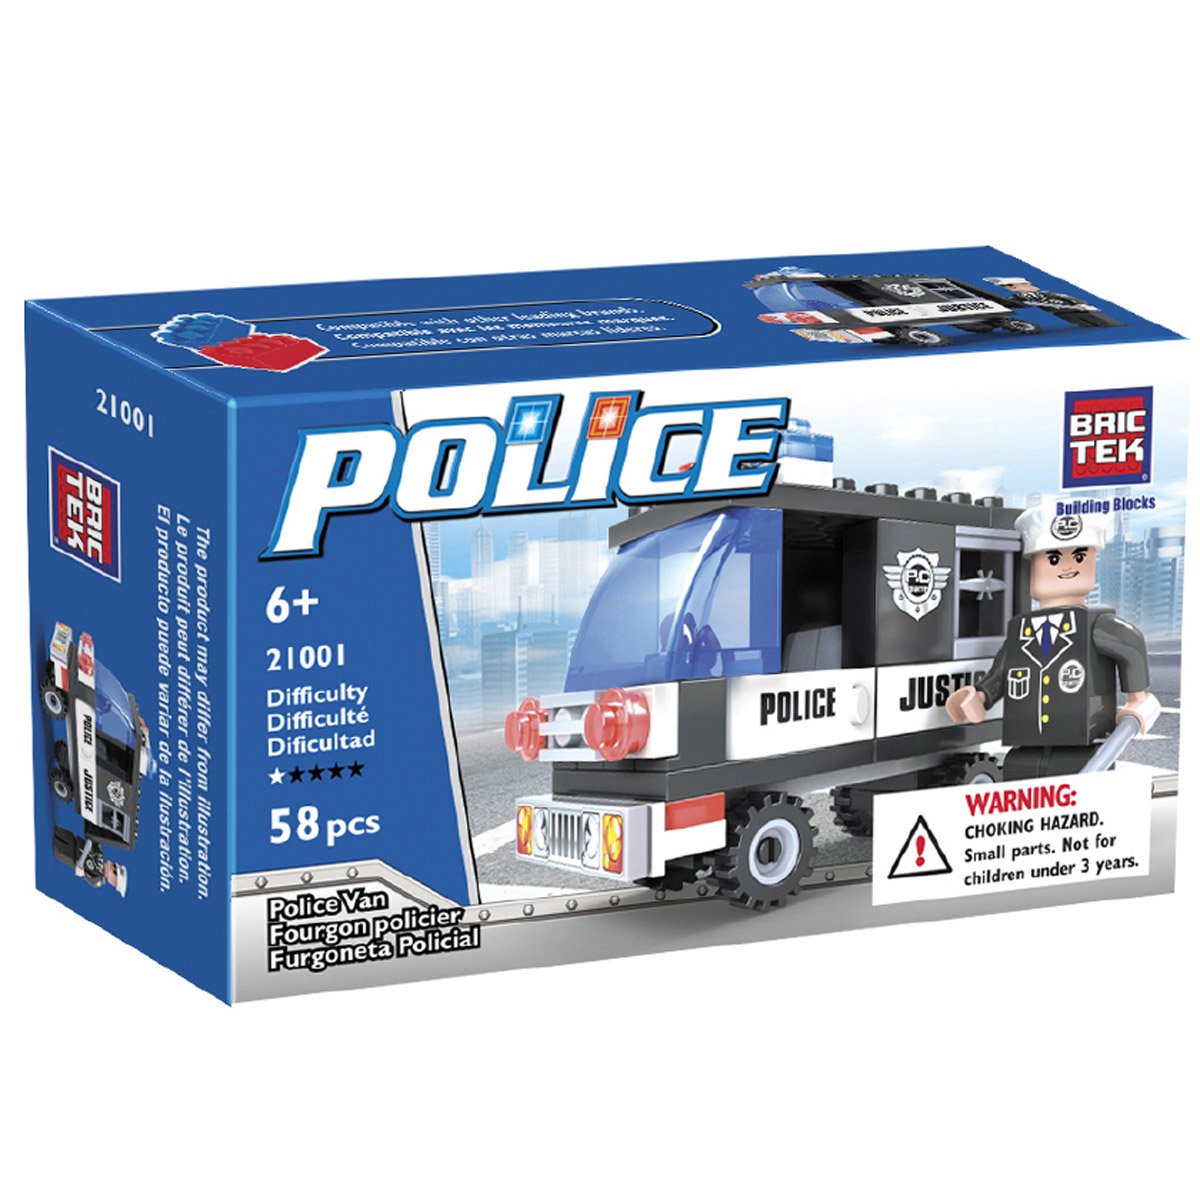 Brictek Police Van Toy Plus